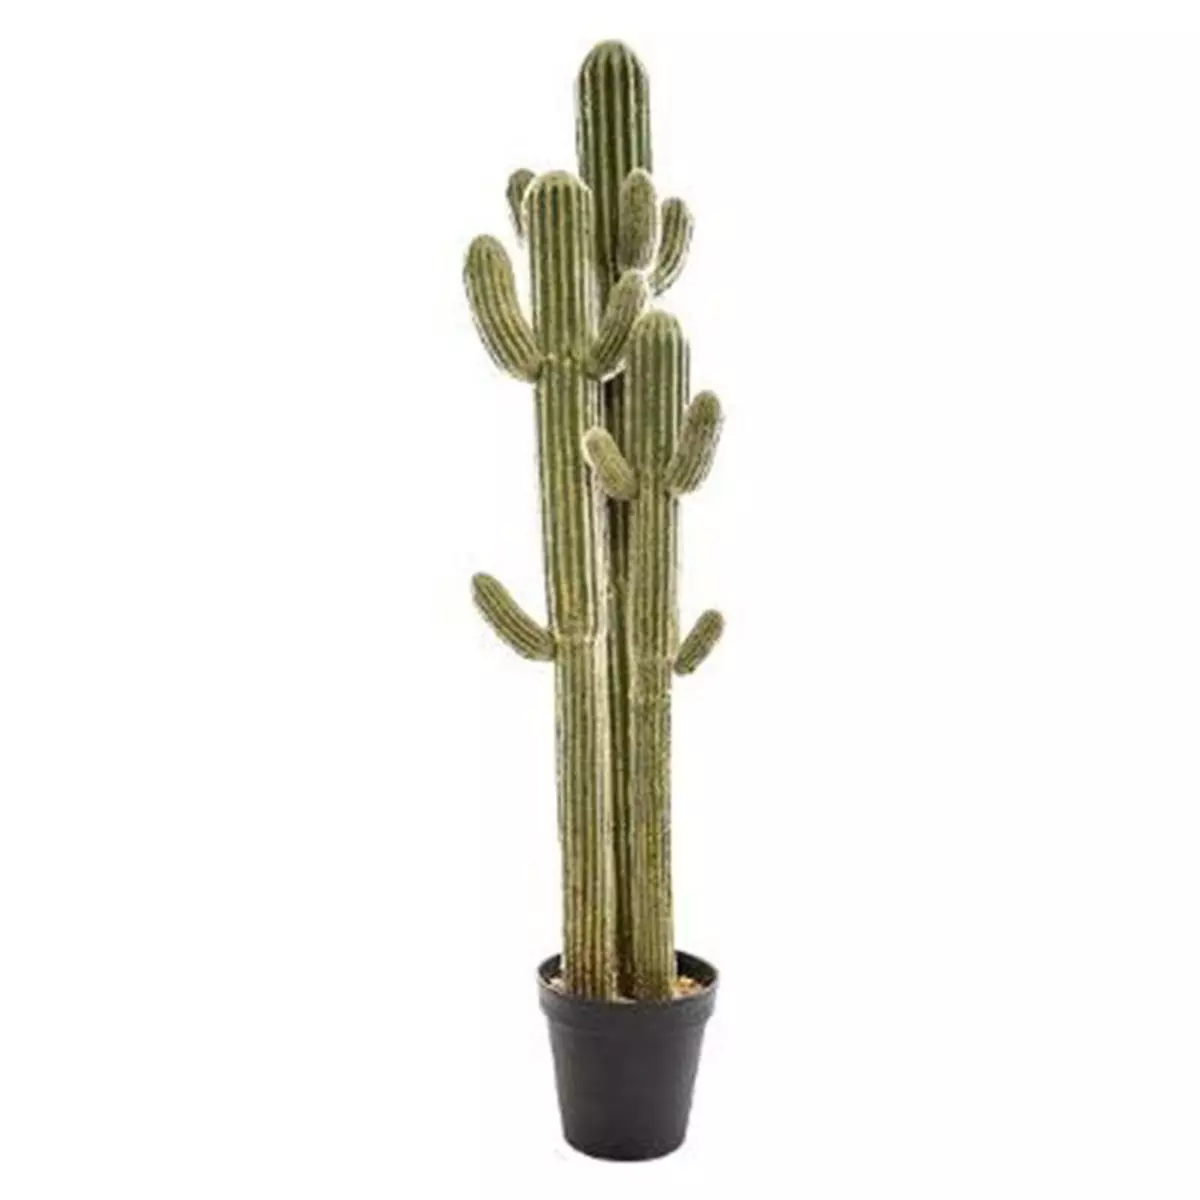  Plante Artificielle  Cactus 3 Troncs  148cm Vert